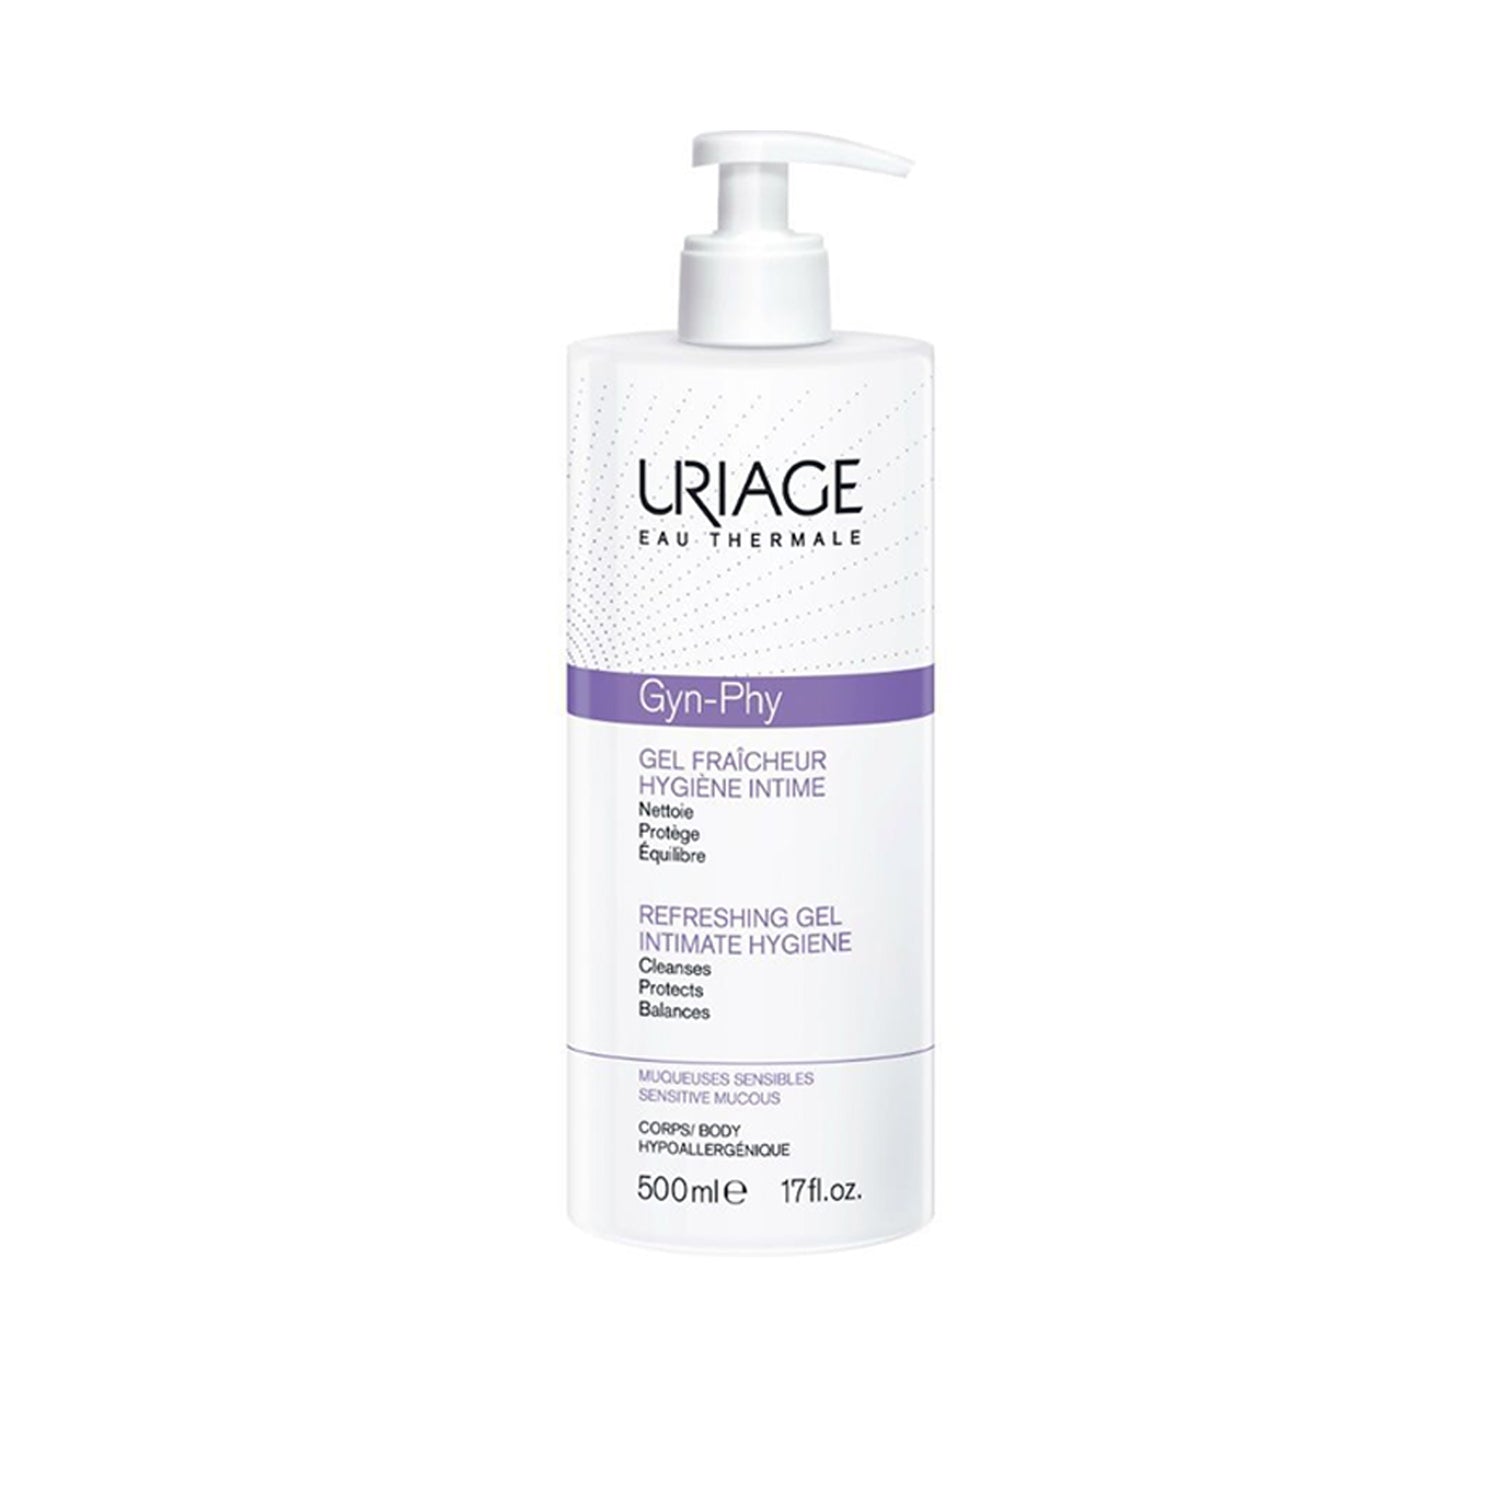 Uriage Gyn-Phy Intimate Hygiene Refreshing Gel 500ml (16.91fl oz)